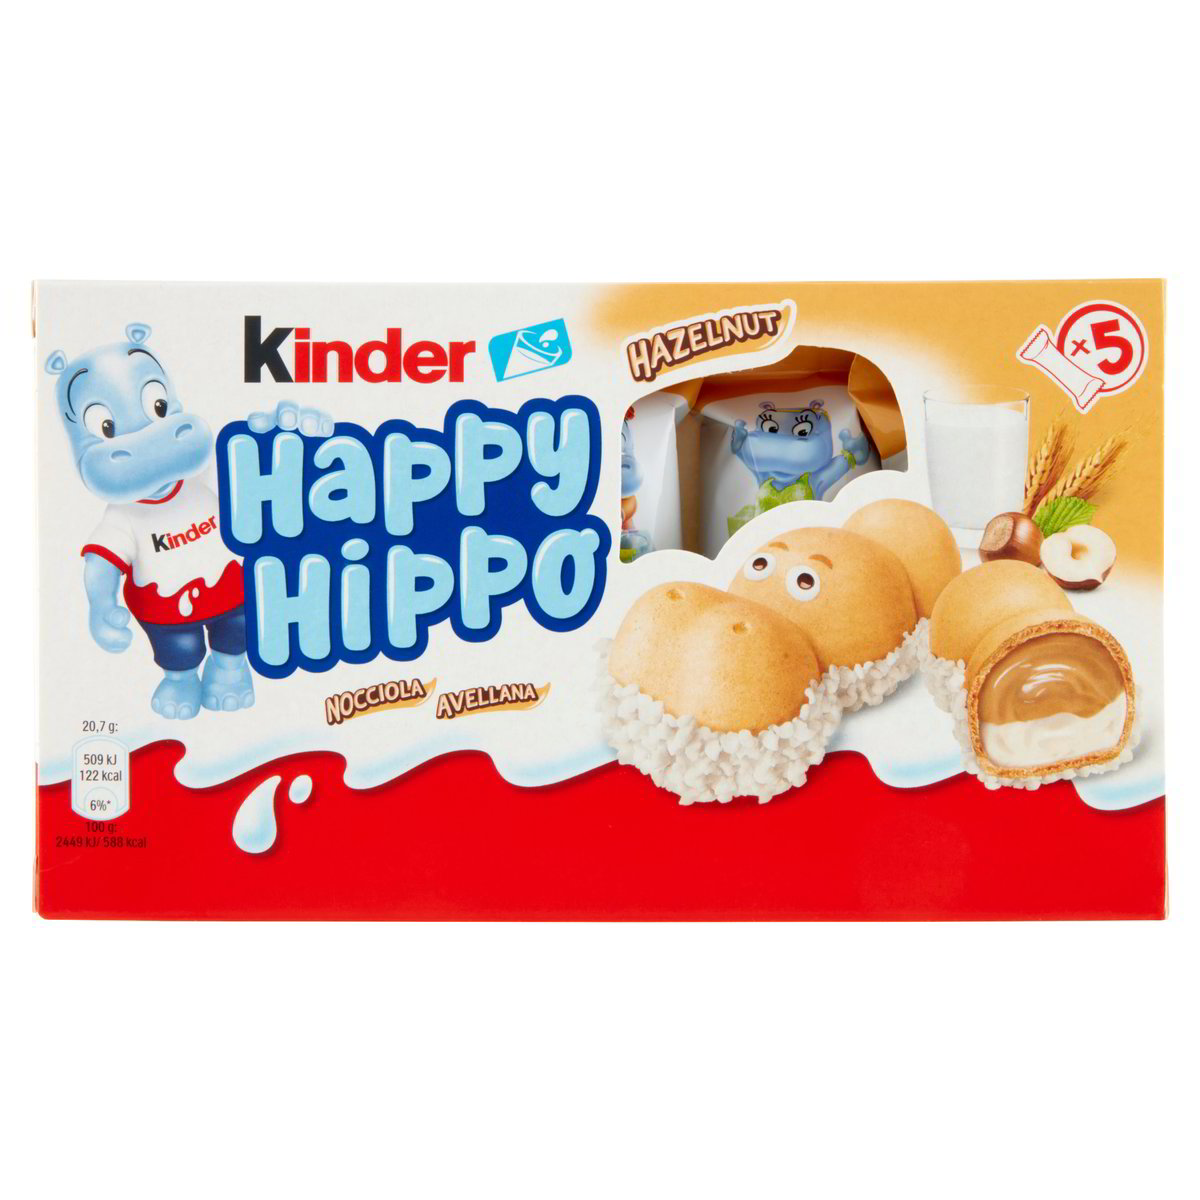 Happy Hippo Nocciola